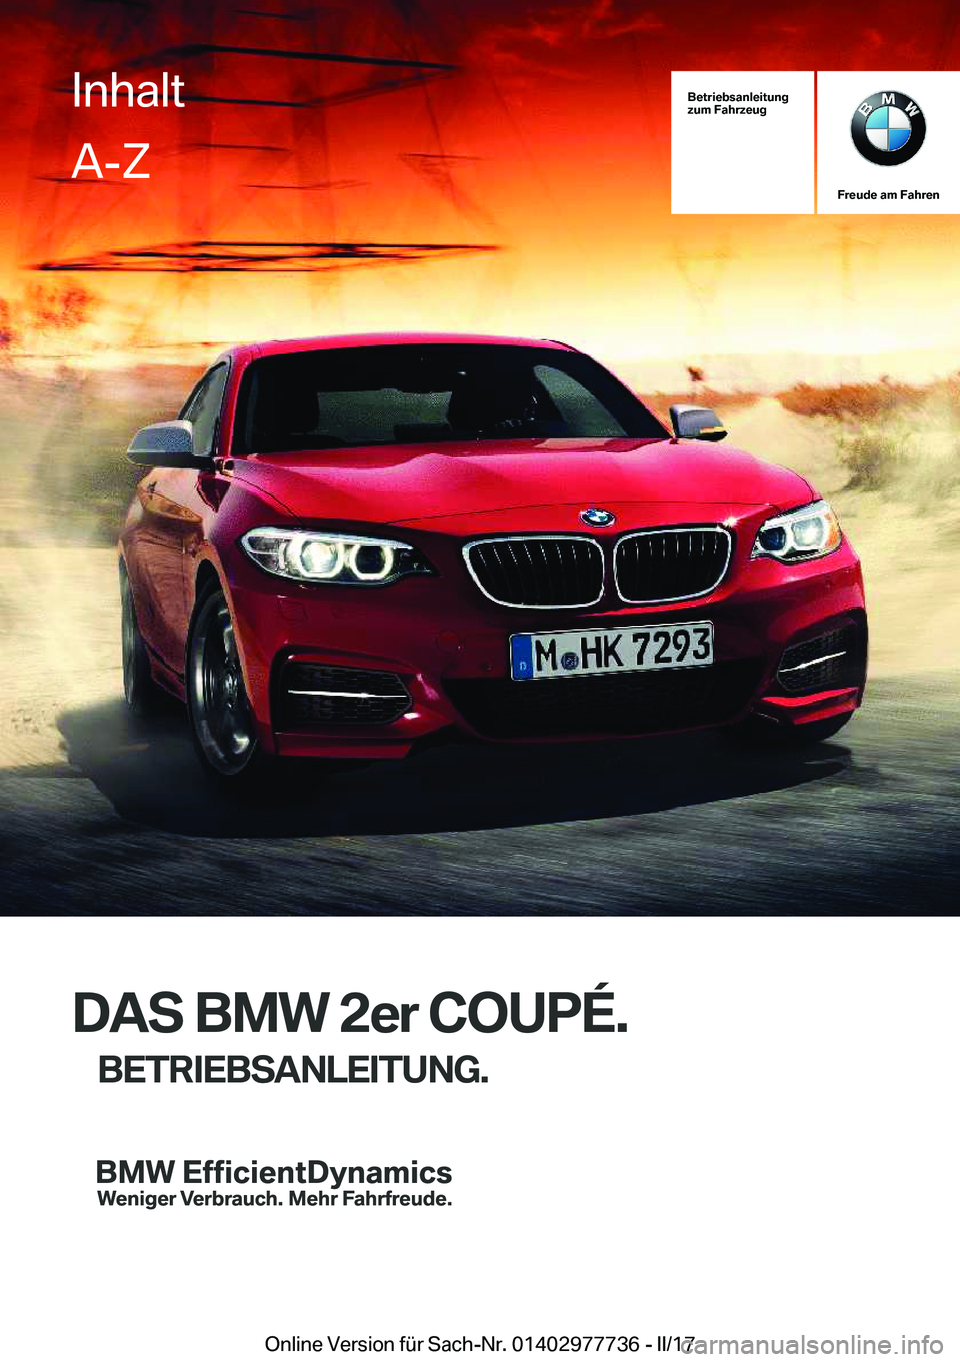 BMW 2 SERIES COUPE 2017  Betriebsanleitungen (in German) �B�e�t�r�i�e�b�s�a�n�l�e�i�t�u�n�g
�z�u�m��F�a�h�r�z�e�u�g
�F�r�e�u�d�e��a�m��F�a�h�r�e�n
�D�A�S��B�M�W��2�e�r��C�O�U�P�